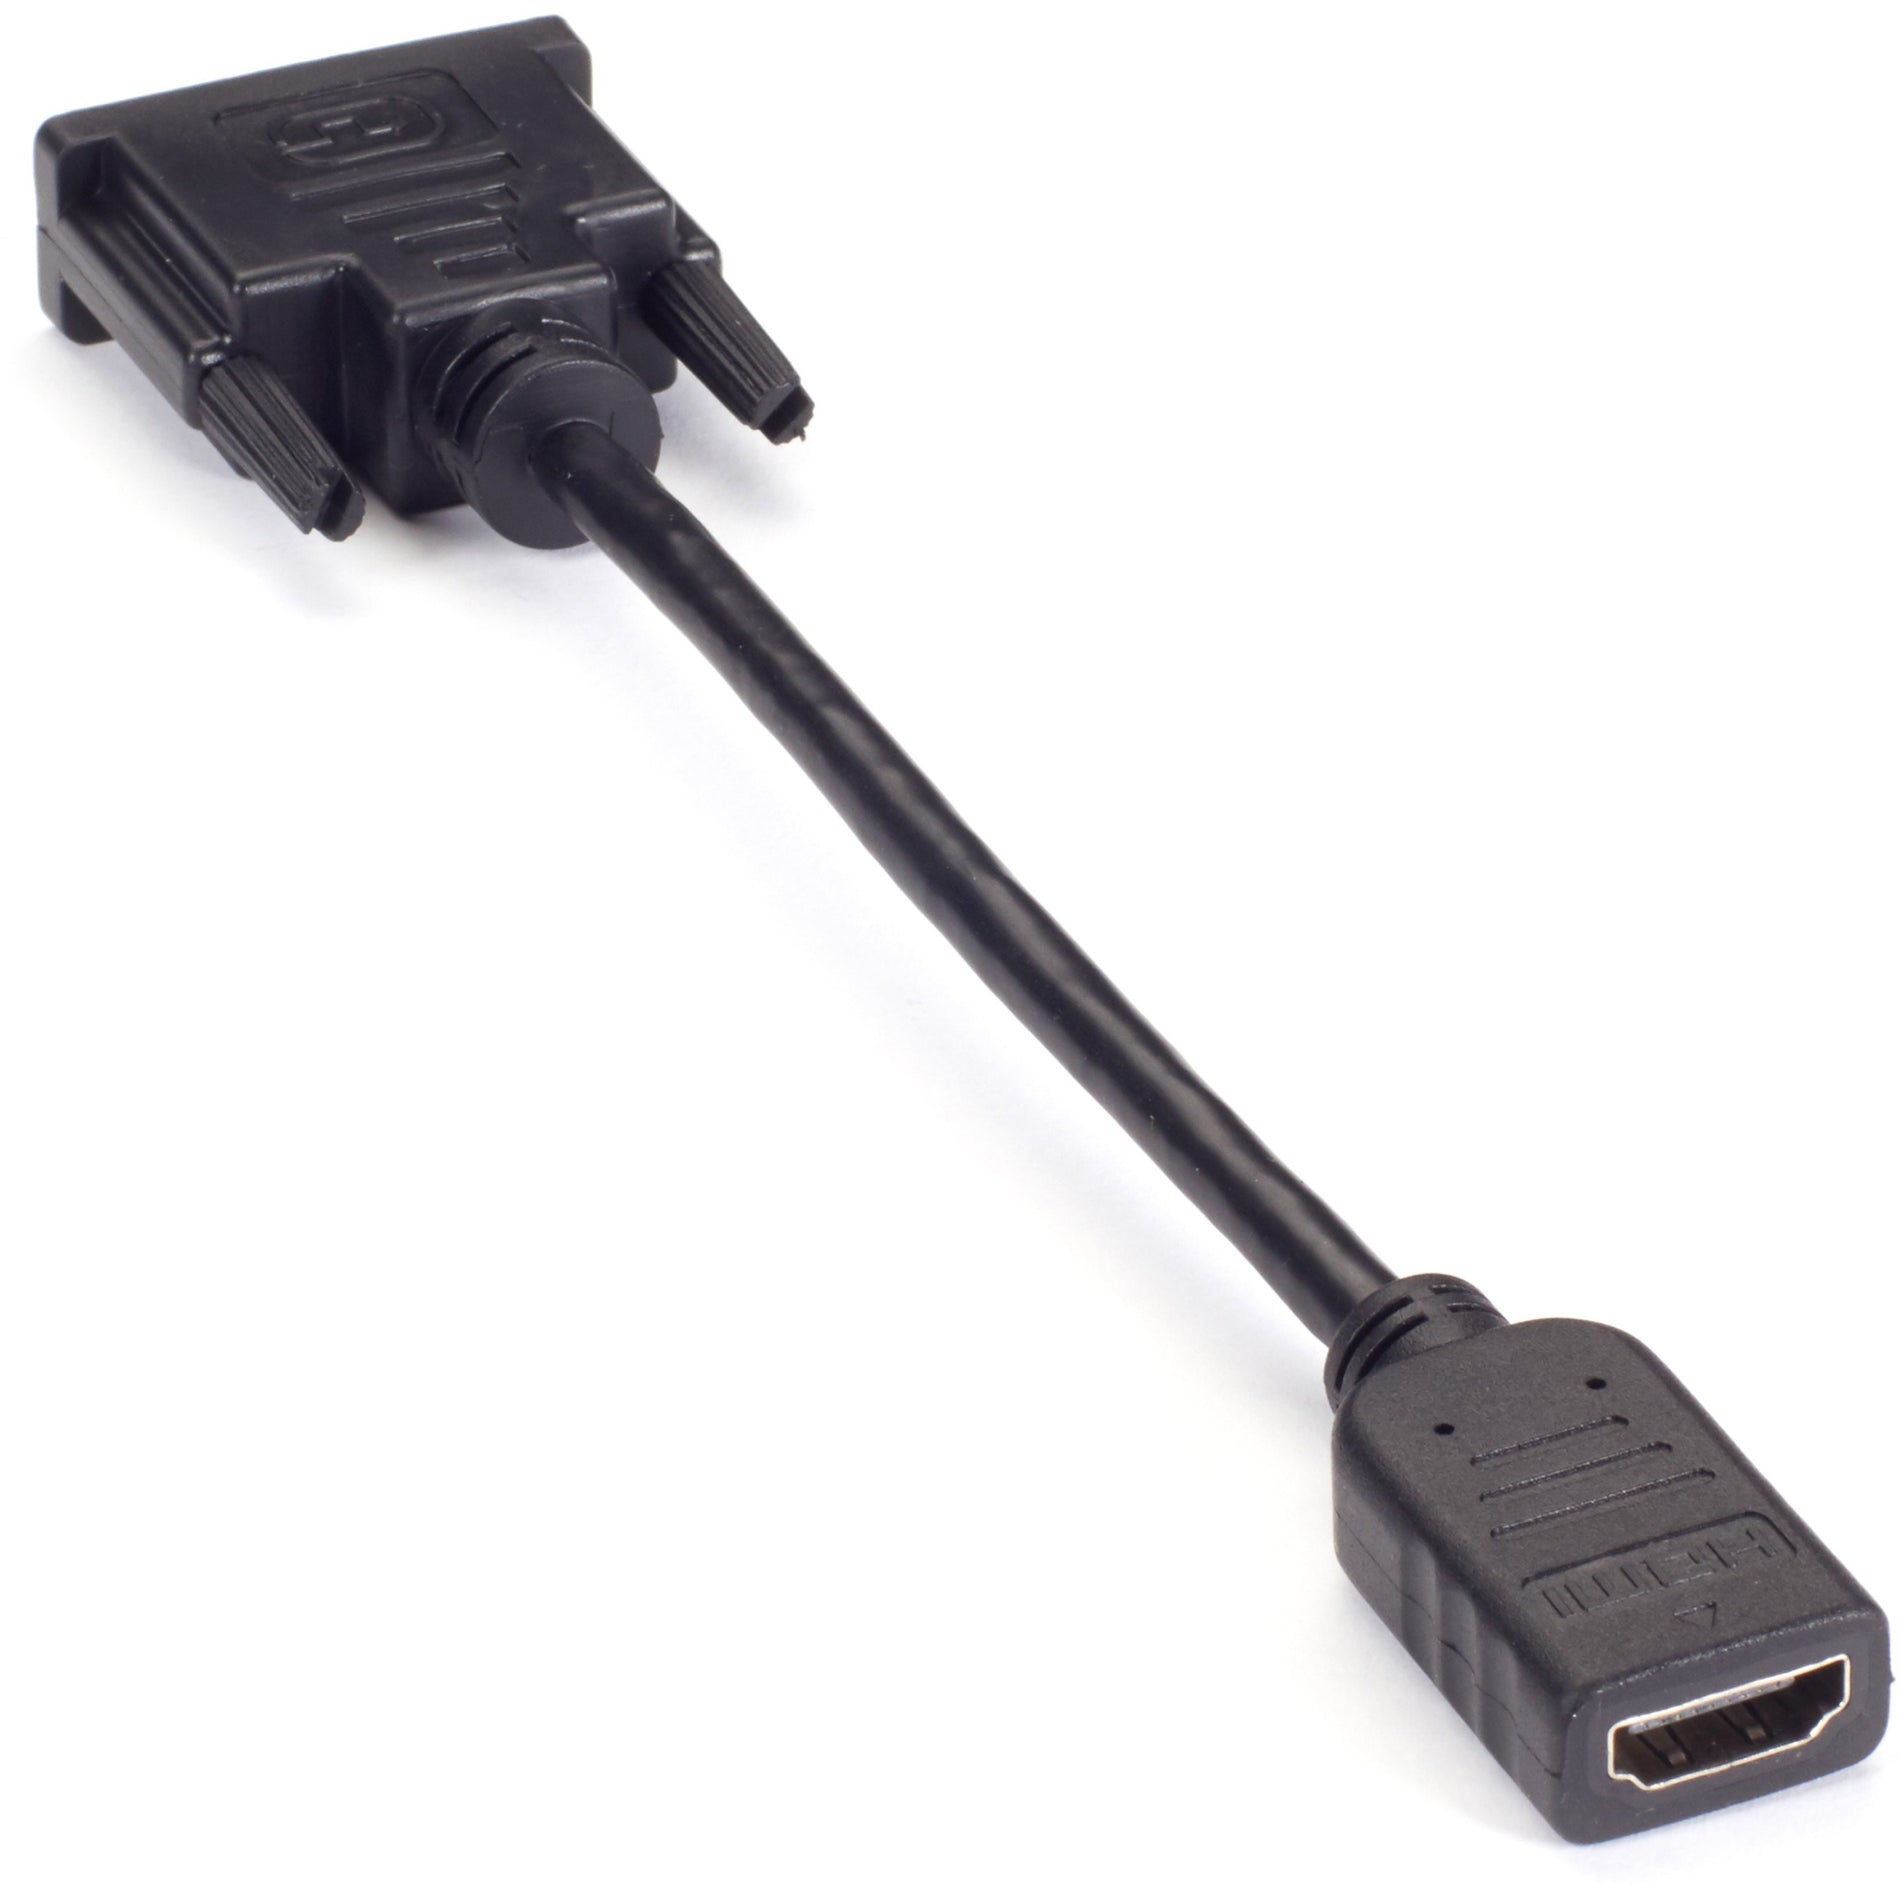 Marca: Caja Negra Adaptador de Video VA-DVID-HDMI - DVI-D Macho a HDMI Hembra Resistente al Estrés Alivio de Tensión Longitud del Cable de 8" Resolución Soportada de 1920 x 1080